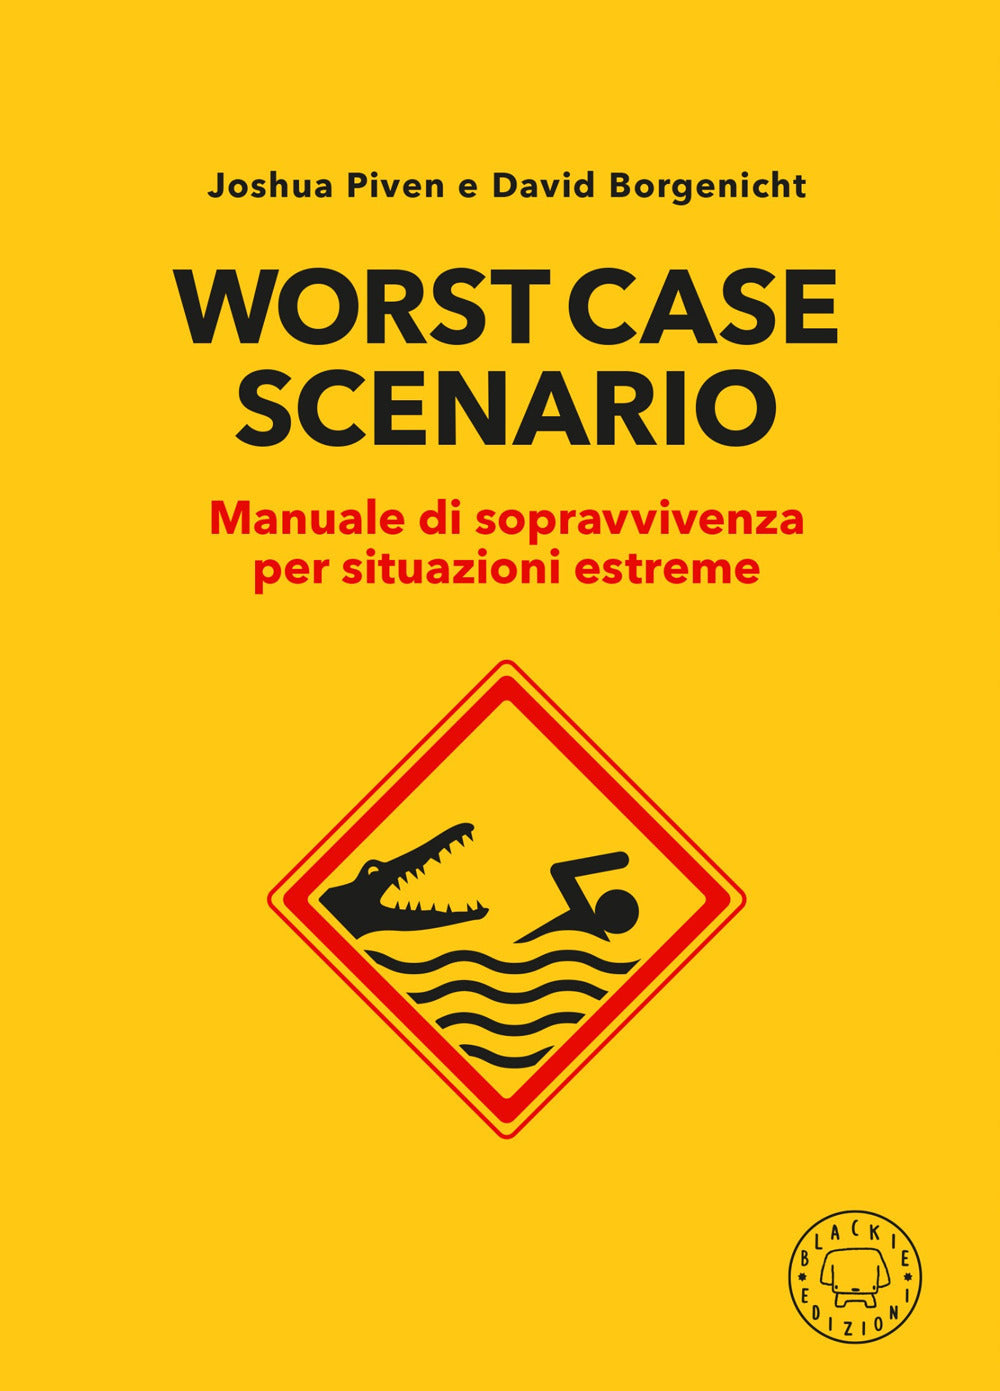 Worst case scenario - manuale di sopravvivenza per situazioni estreme